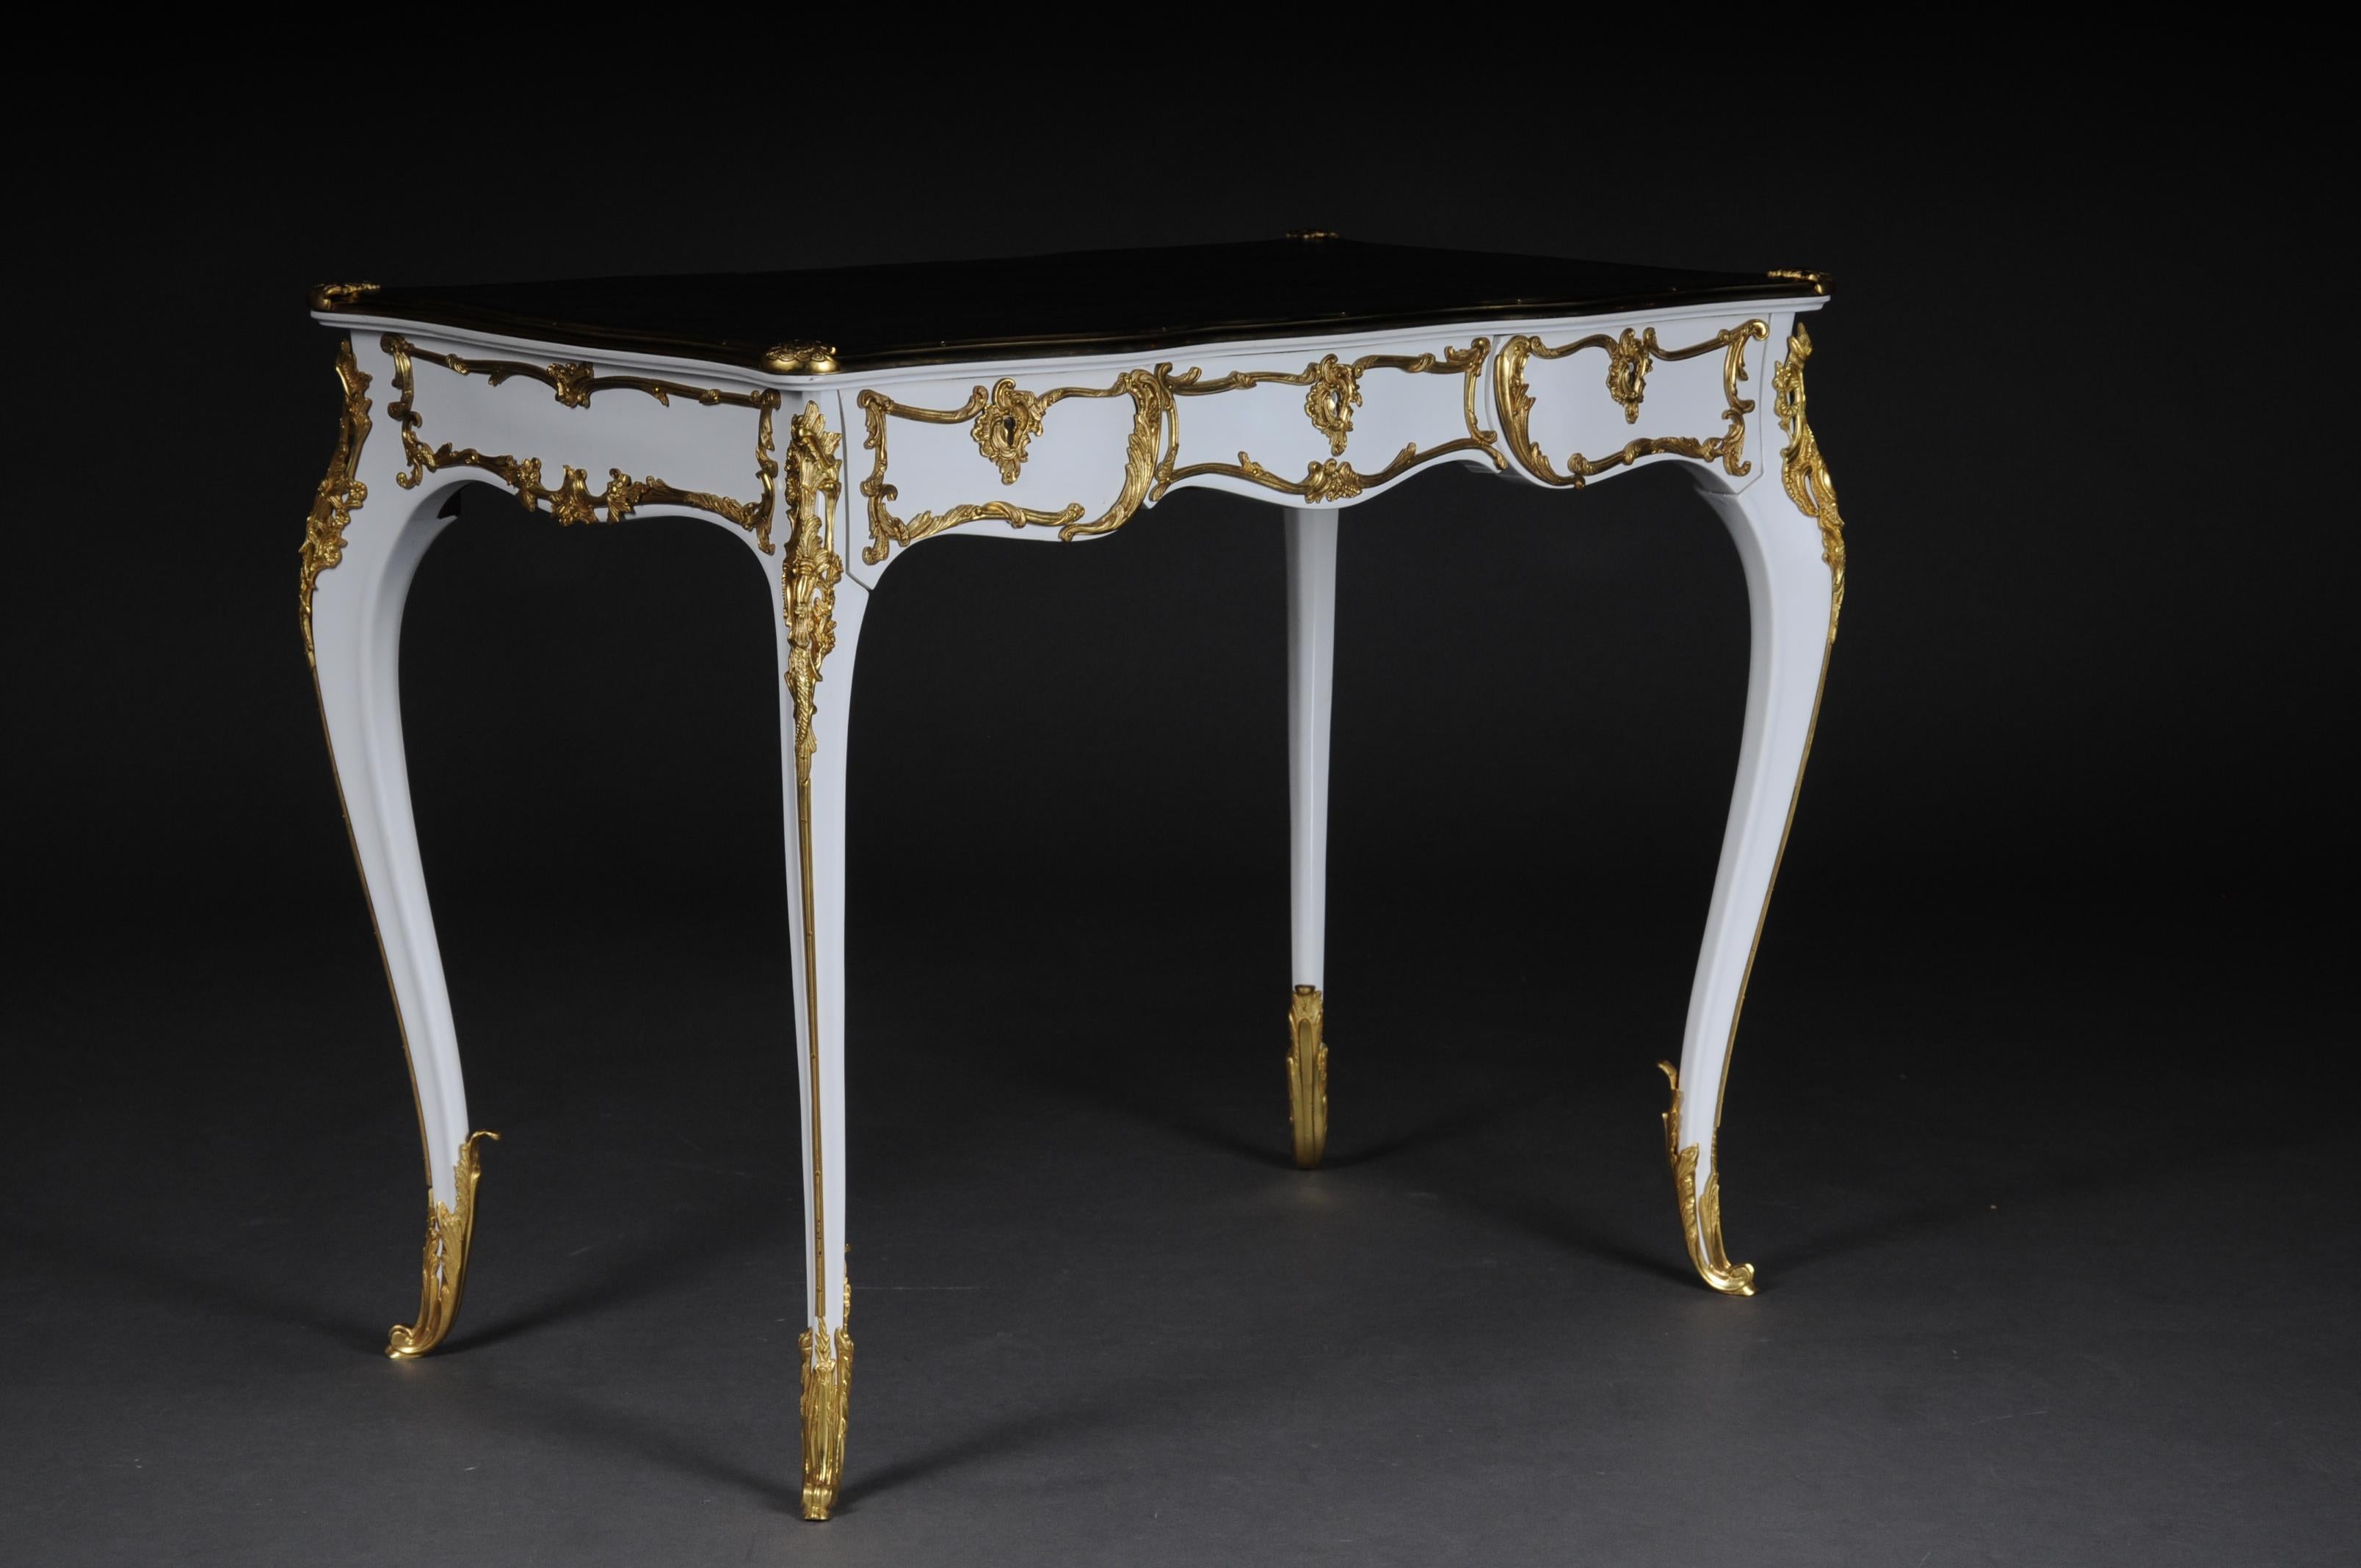 20. Jahrhundert luxuriöses weißes Bureau plat / Schreibtisch im Louis XV Stil

Massives Buchenholz in weißer Farbe. Sehr feine, florale Bronzebeschläge.
Geschwungener und ausgeprägter / gewölbter Holzkörper. Rahmenbasis mit vierseitiger